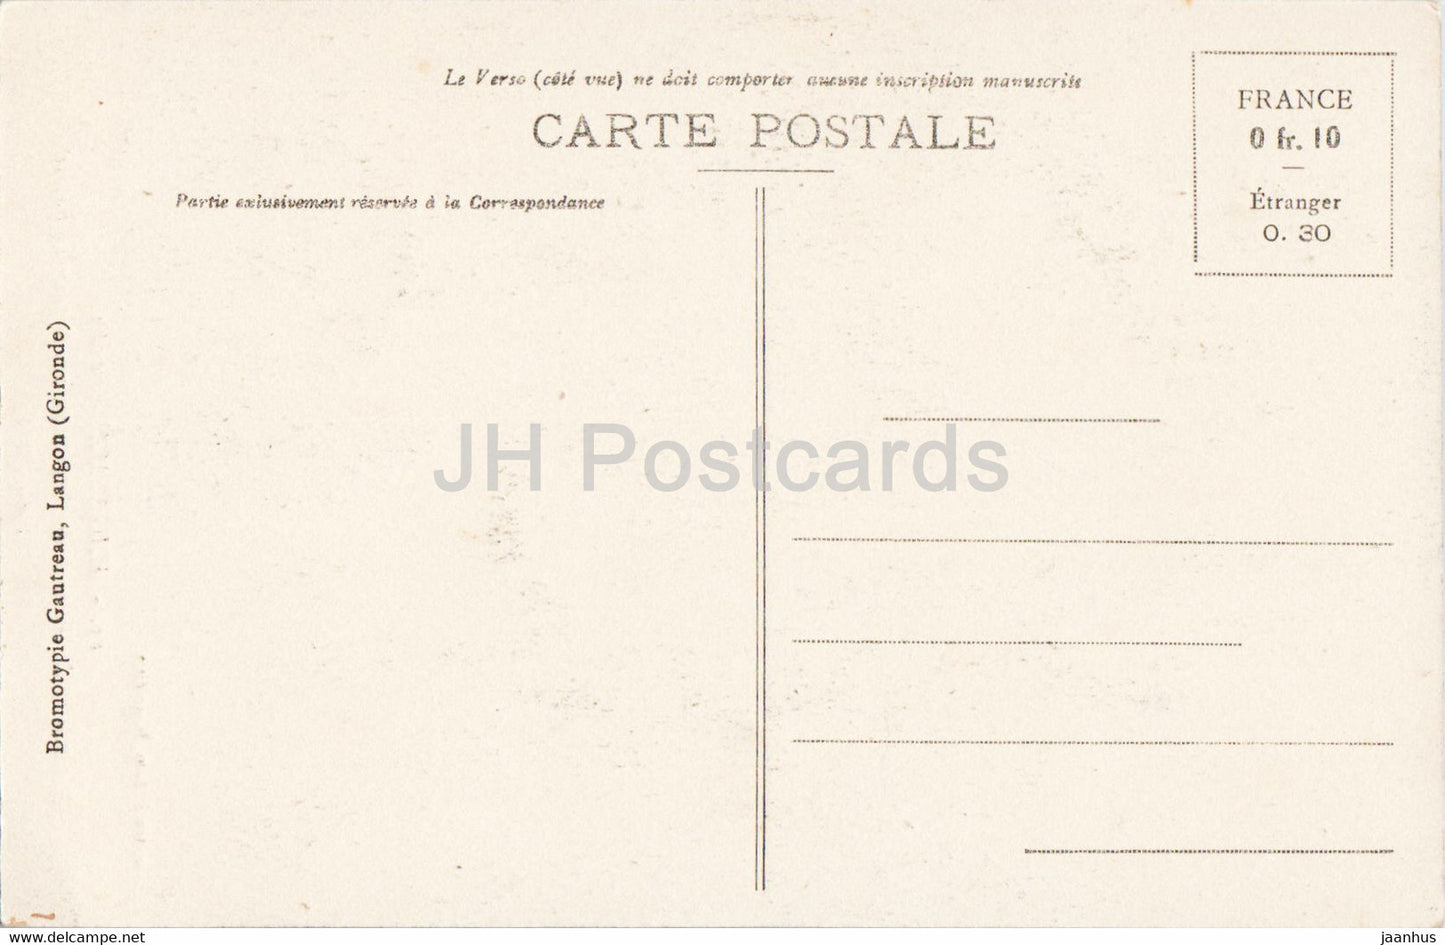 Hagetmau - Monument des Enfants de Hagetmau morts pour la Patrie 1914-1918 - 15 - alte Postkarte - Frankreich - unbenutzt